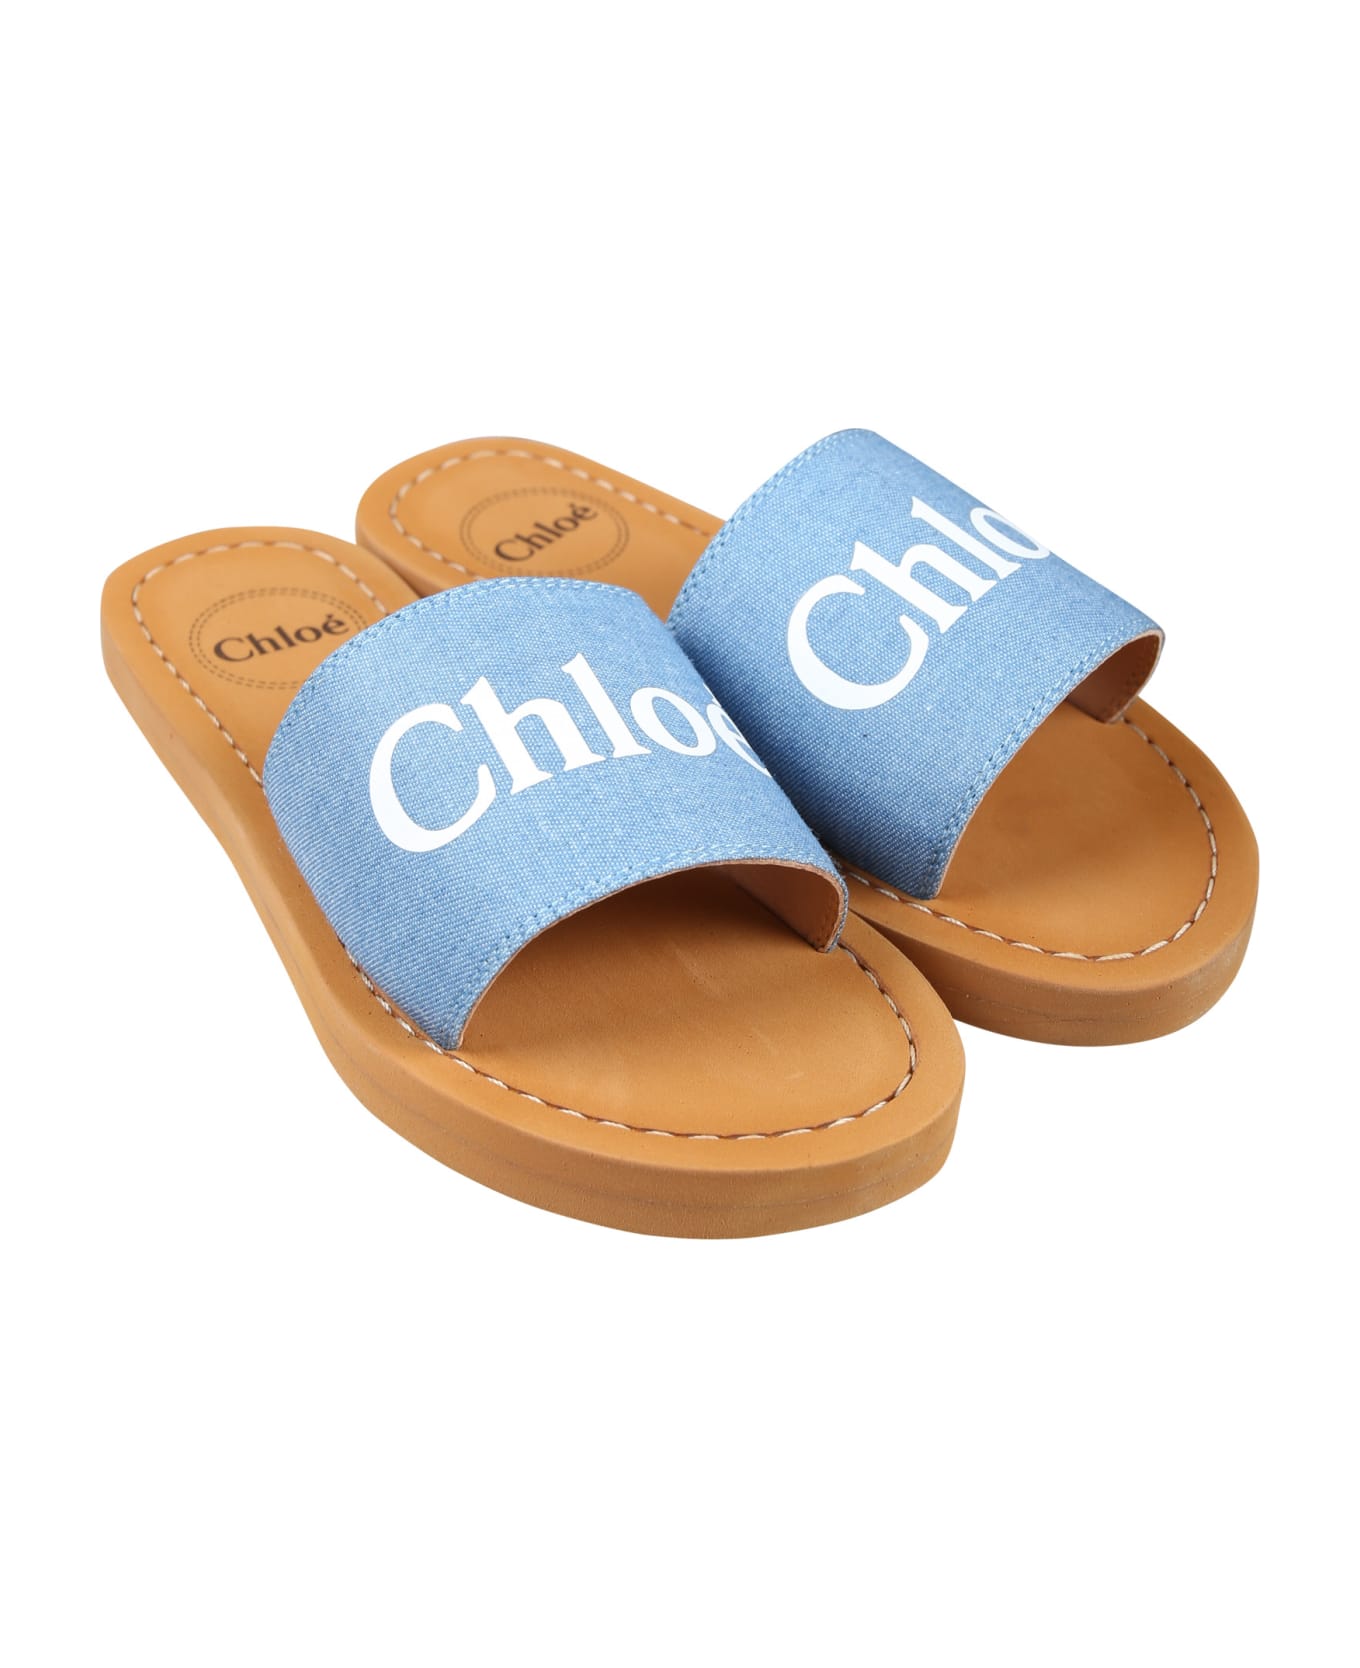 Chloé Denim Slippers For Girl With Logo - Denim シューズ